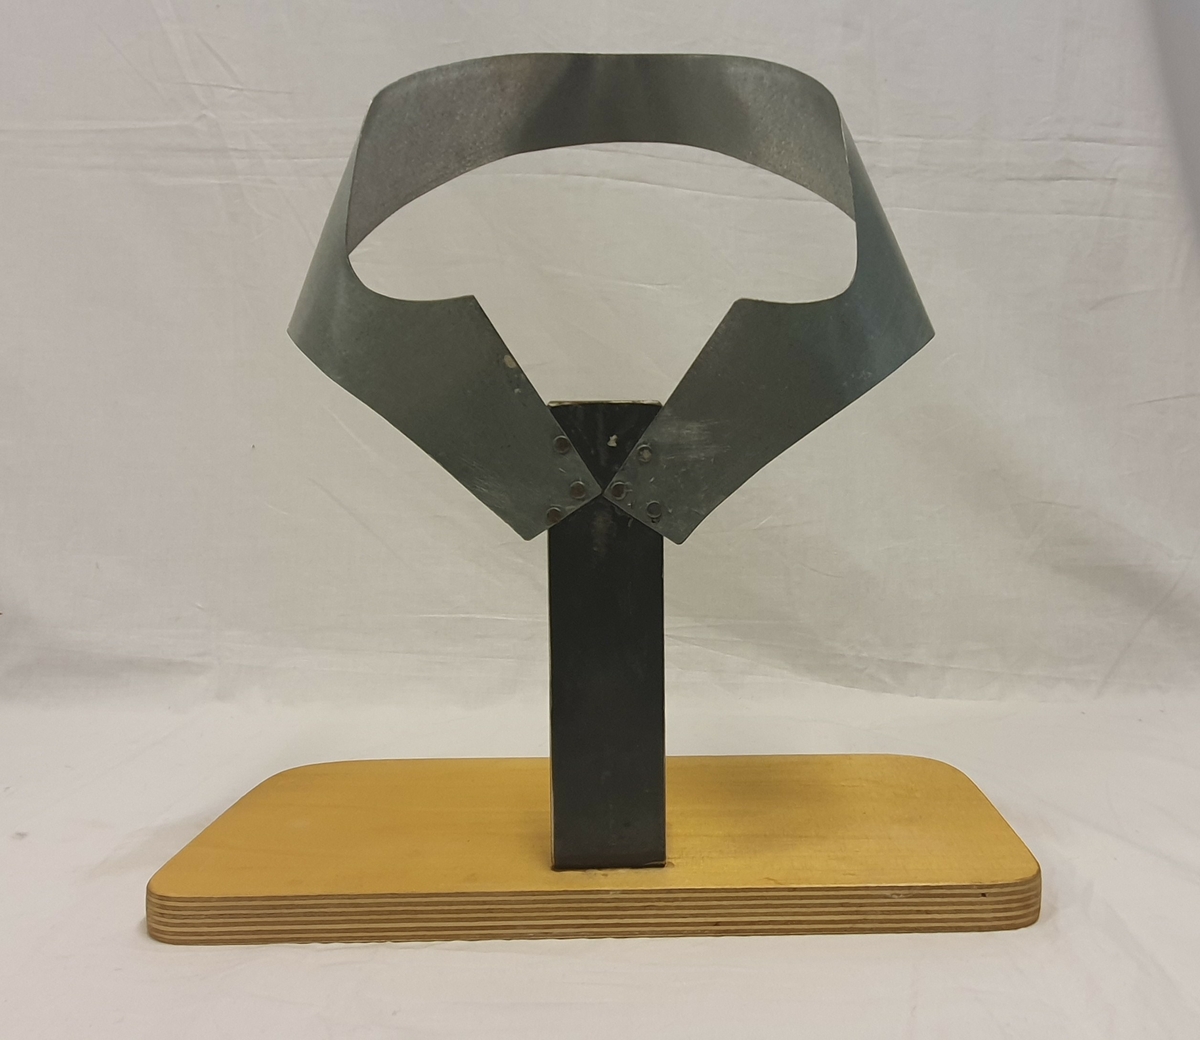 Stativ laget av givers ektefelle; Olav Solvang. Stativet brukes til å forme bordpapp til valk. Bordpapp settes i stativet for å tørke og få formen.